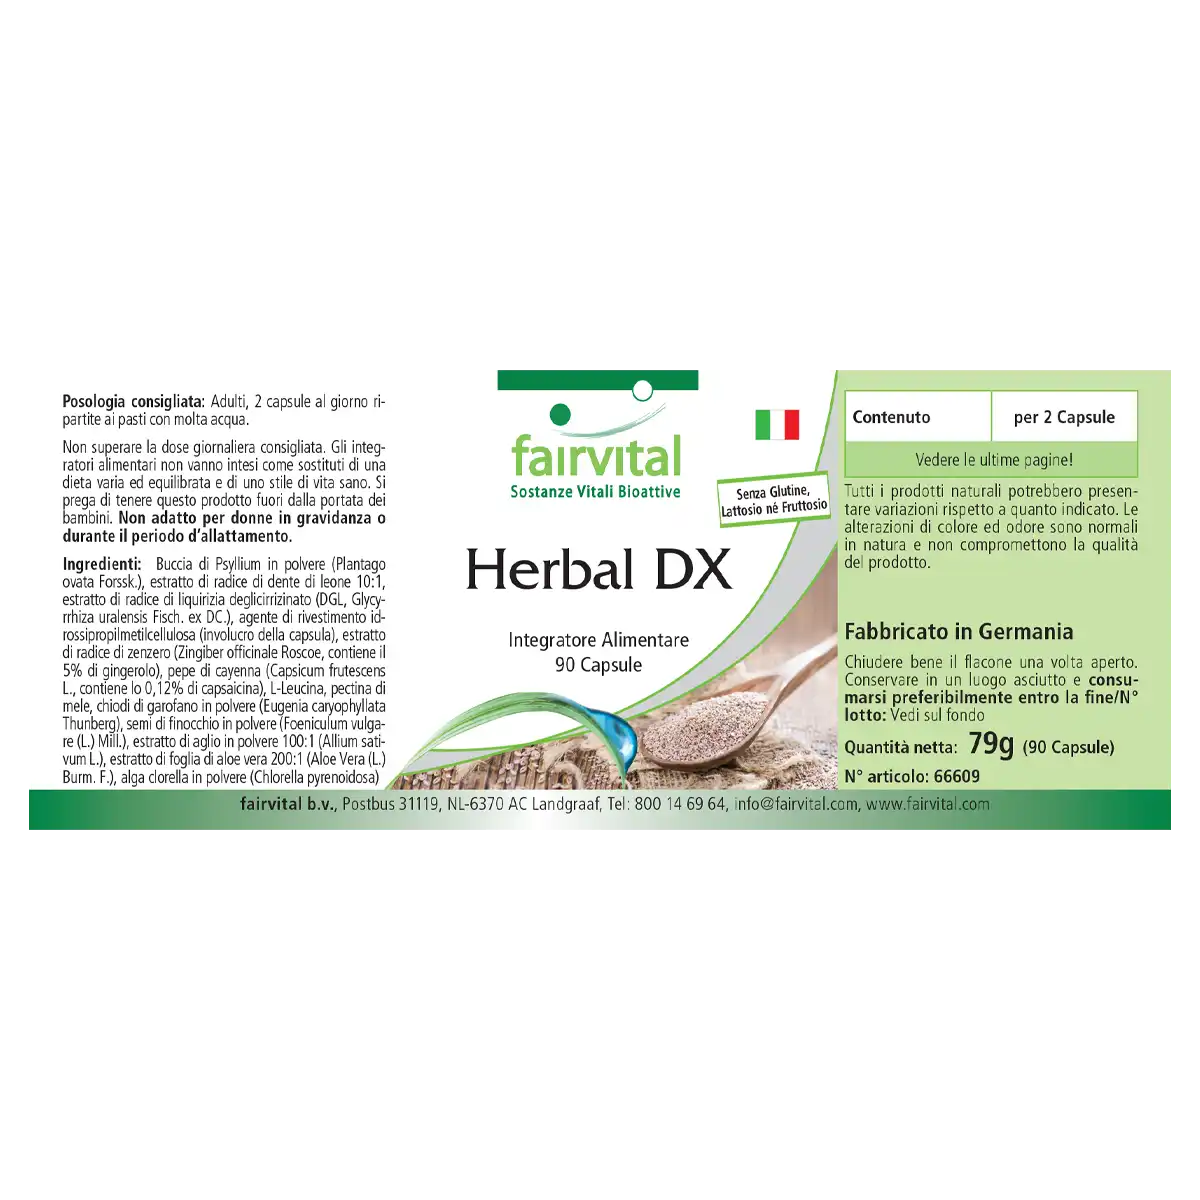 Herbal DX